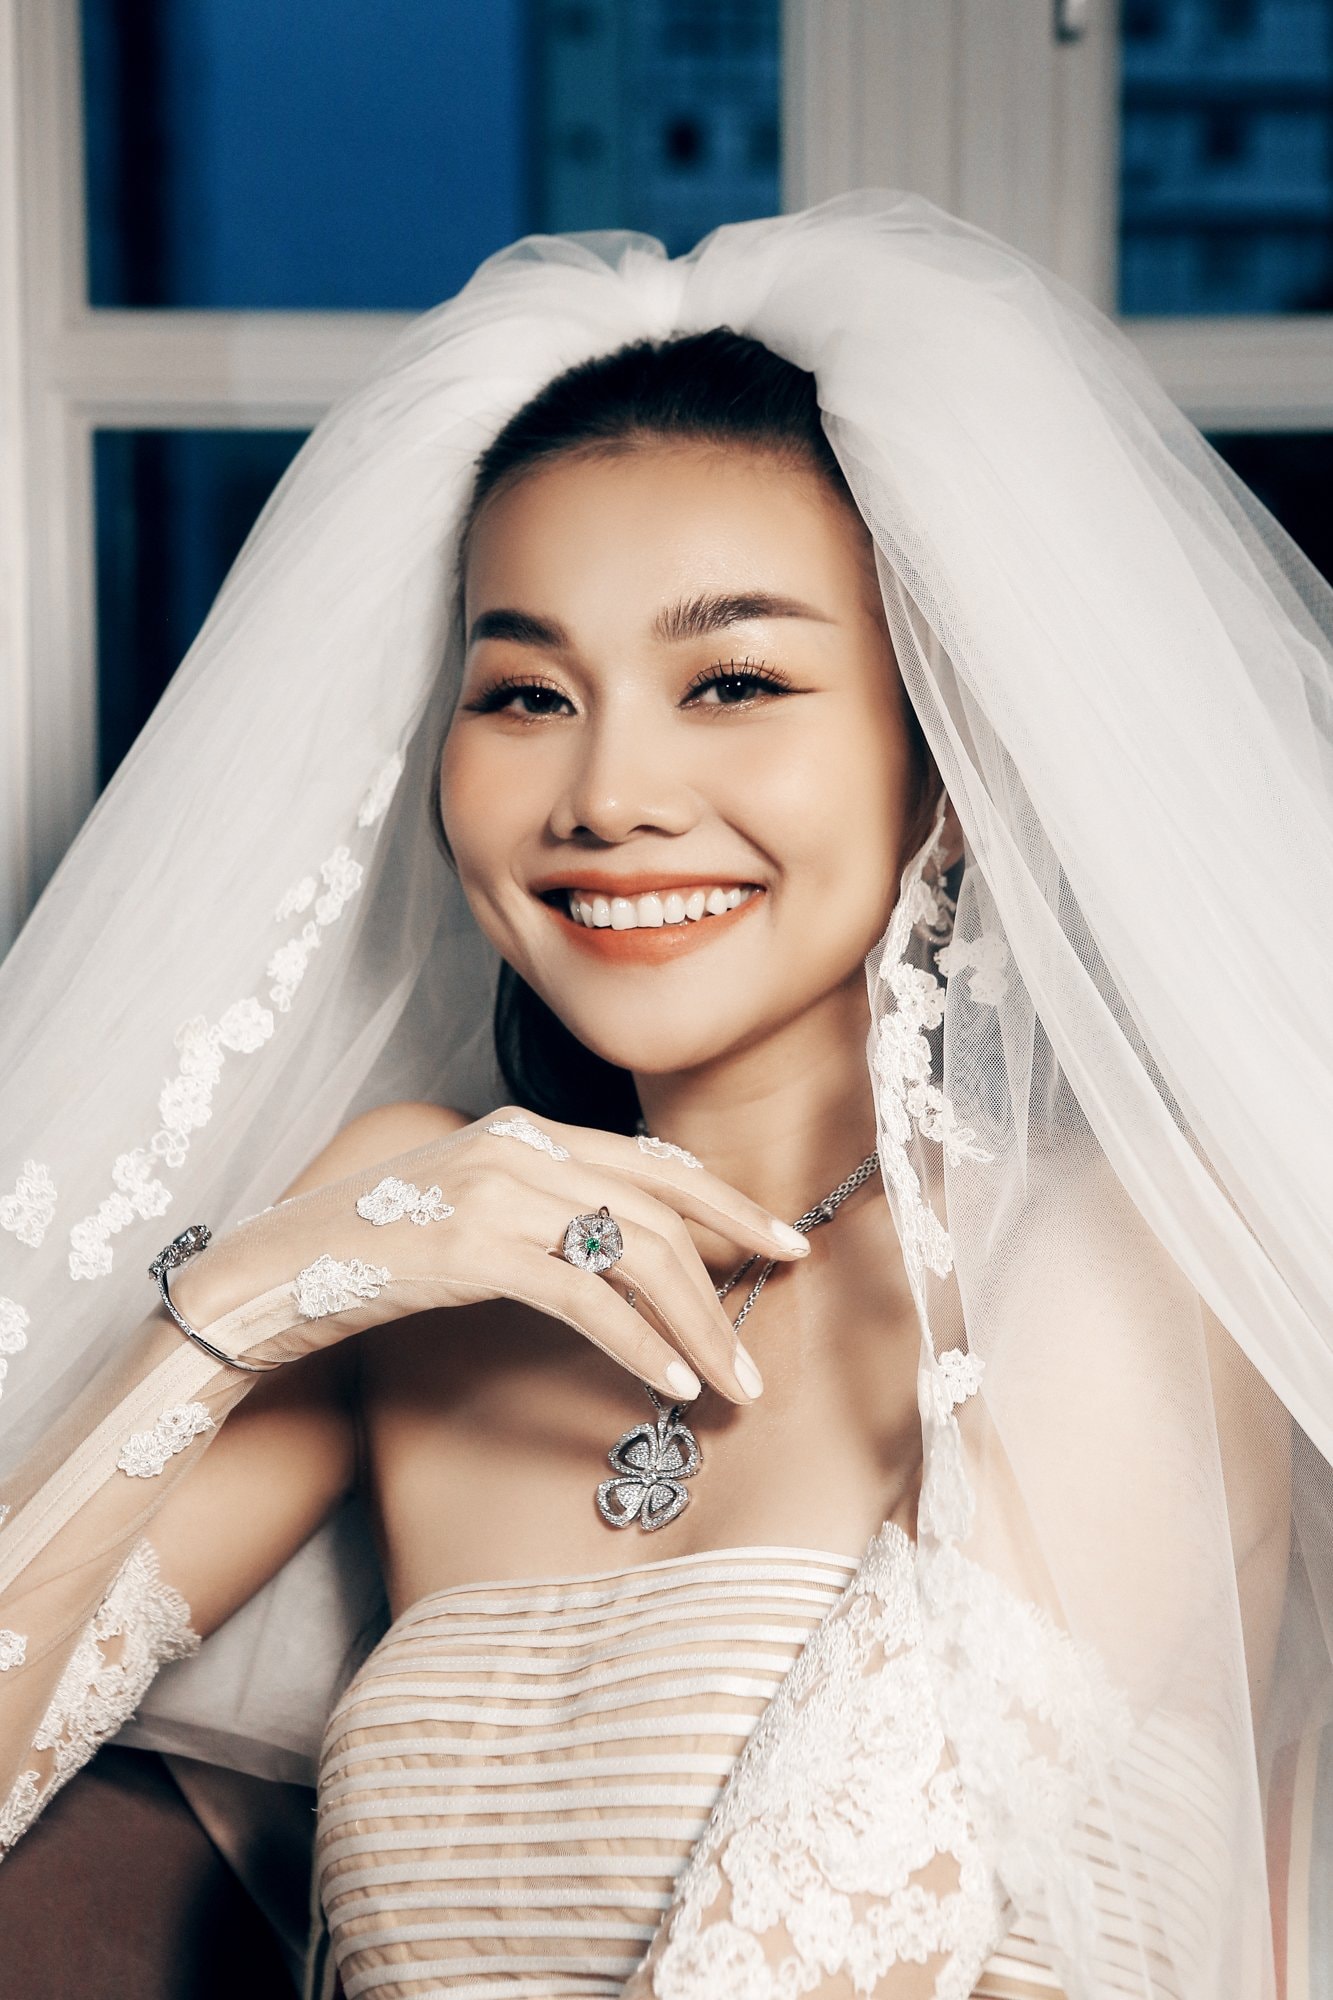 Ý nghĩa trang sức cưới của siêu mẫu Thanh Hằng